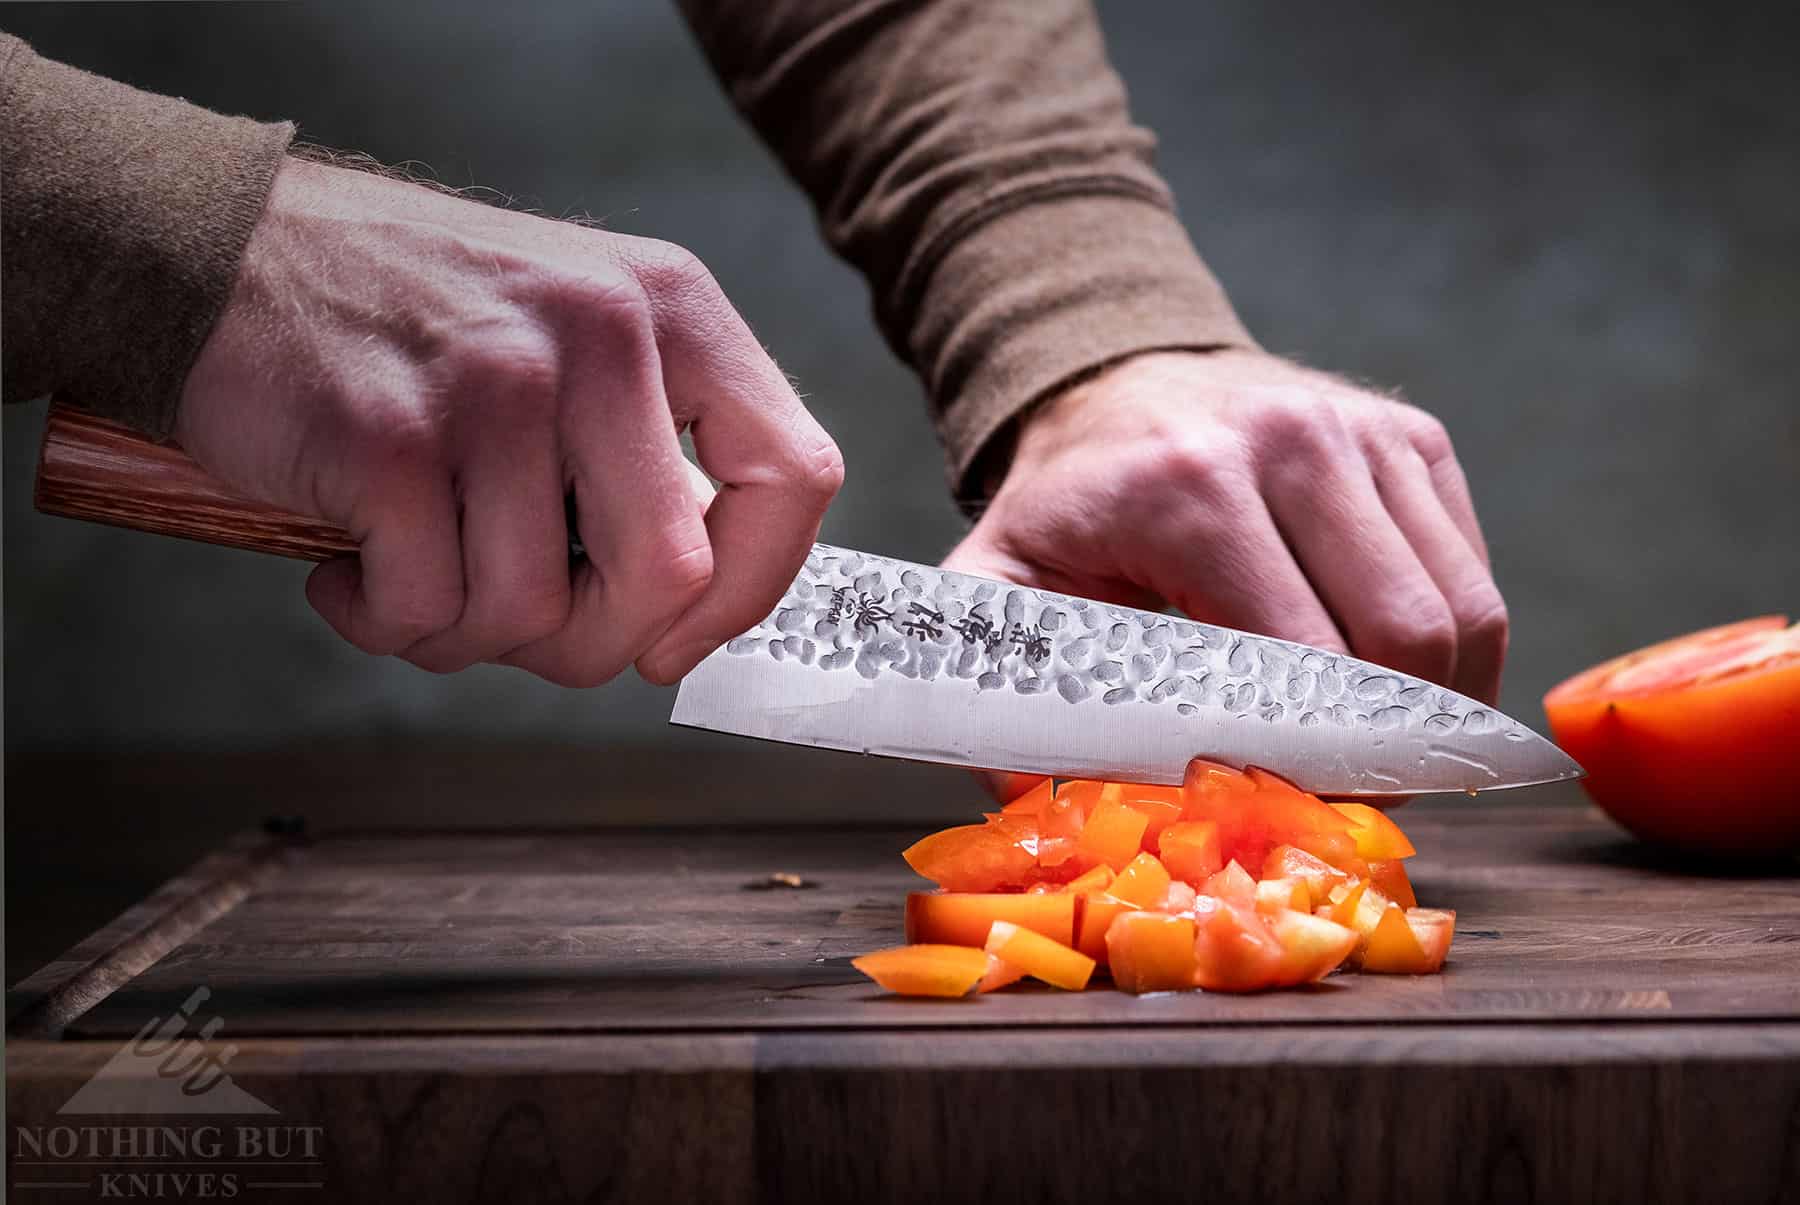 https://www.nothingbutknives.com/wp-content/uploads/2017/03/Kanetsune-Chef-Knife.jpg